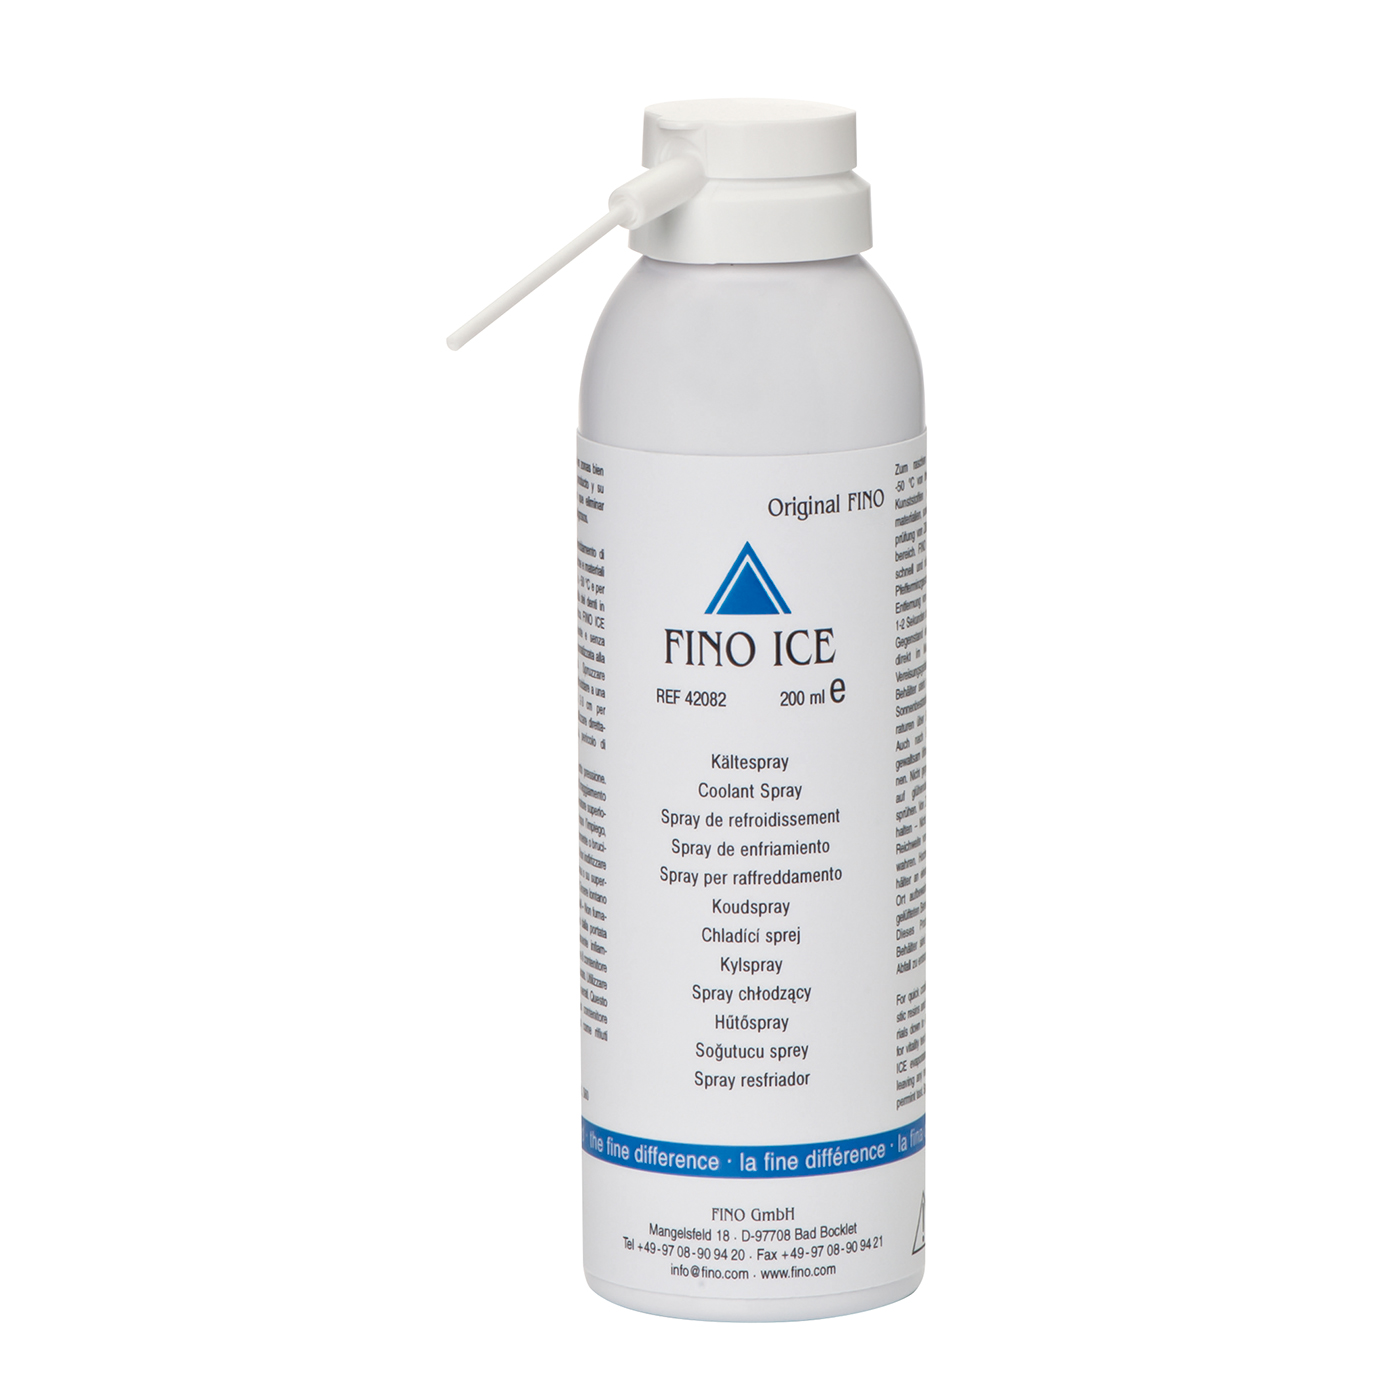 FINO ICE Kältespray - 200 ml